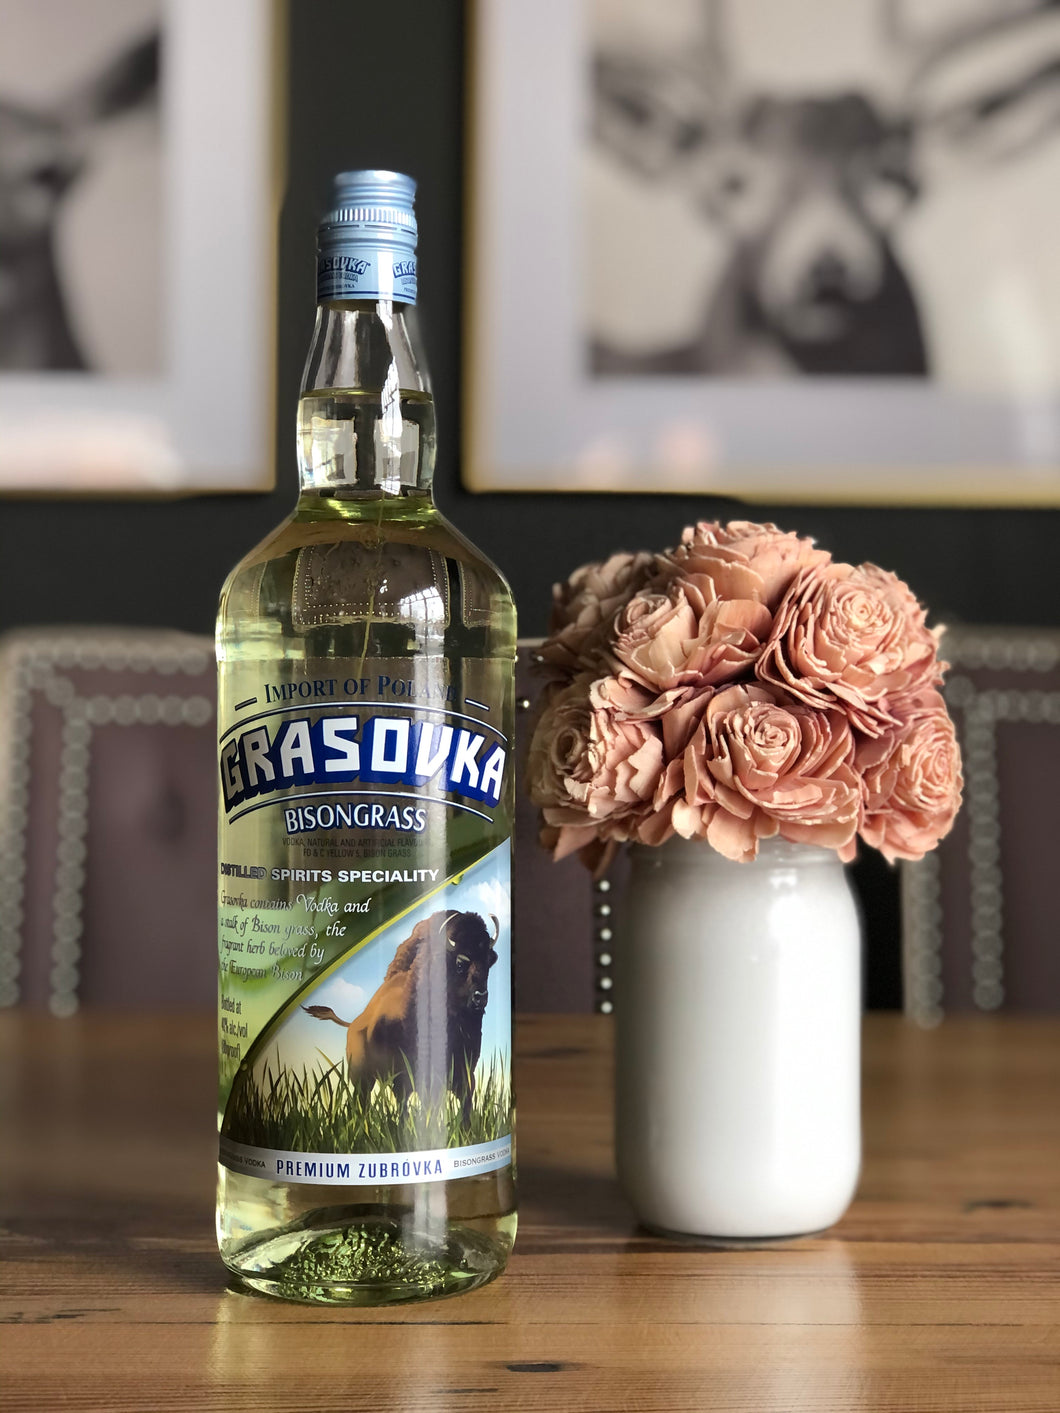 Vintage – Merchant Wine 38 Vodka Grasovka Bisongrass